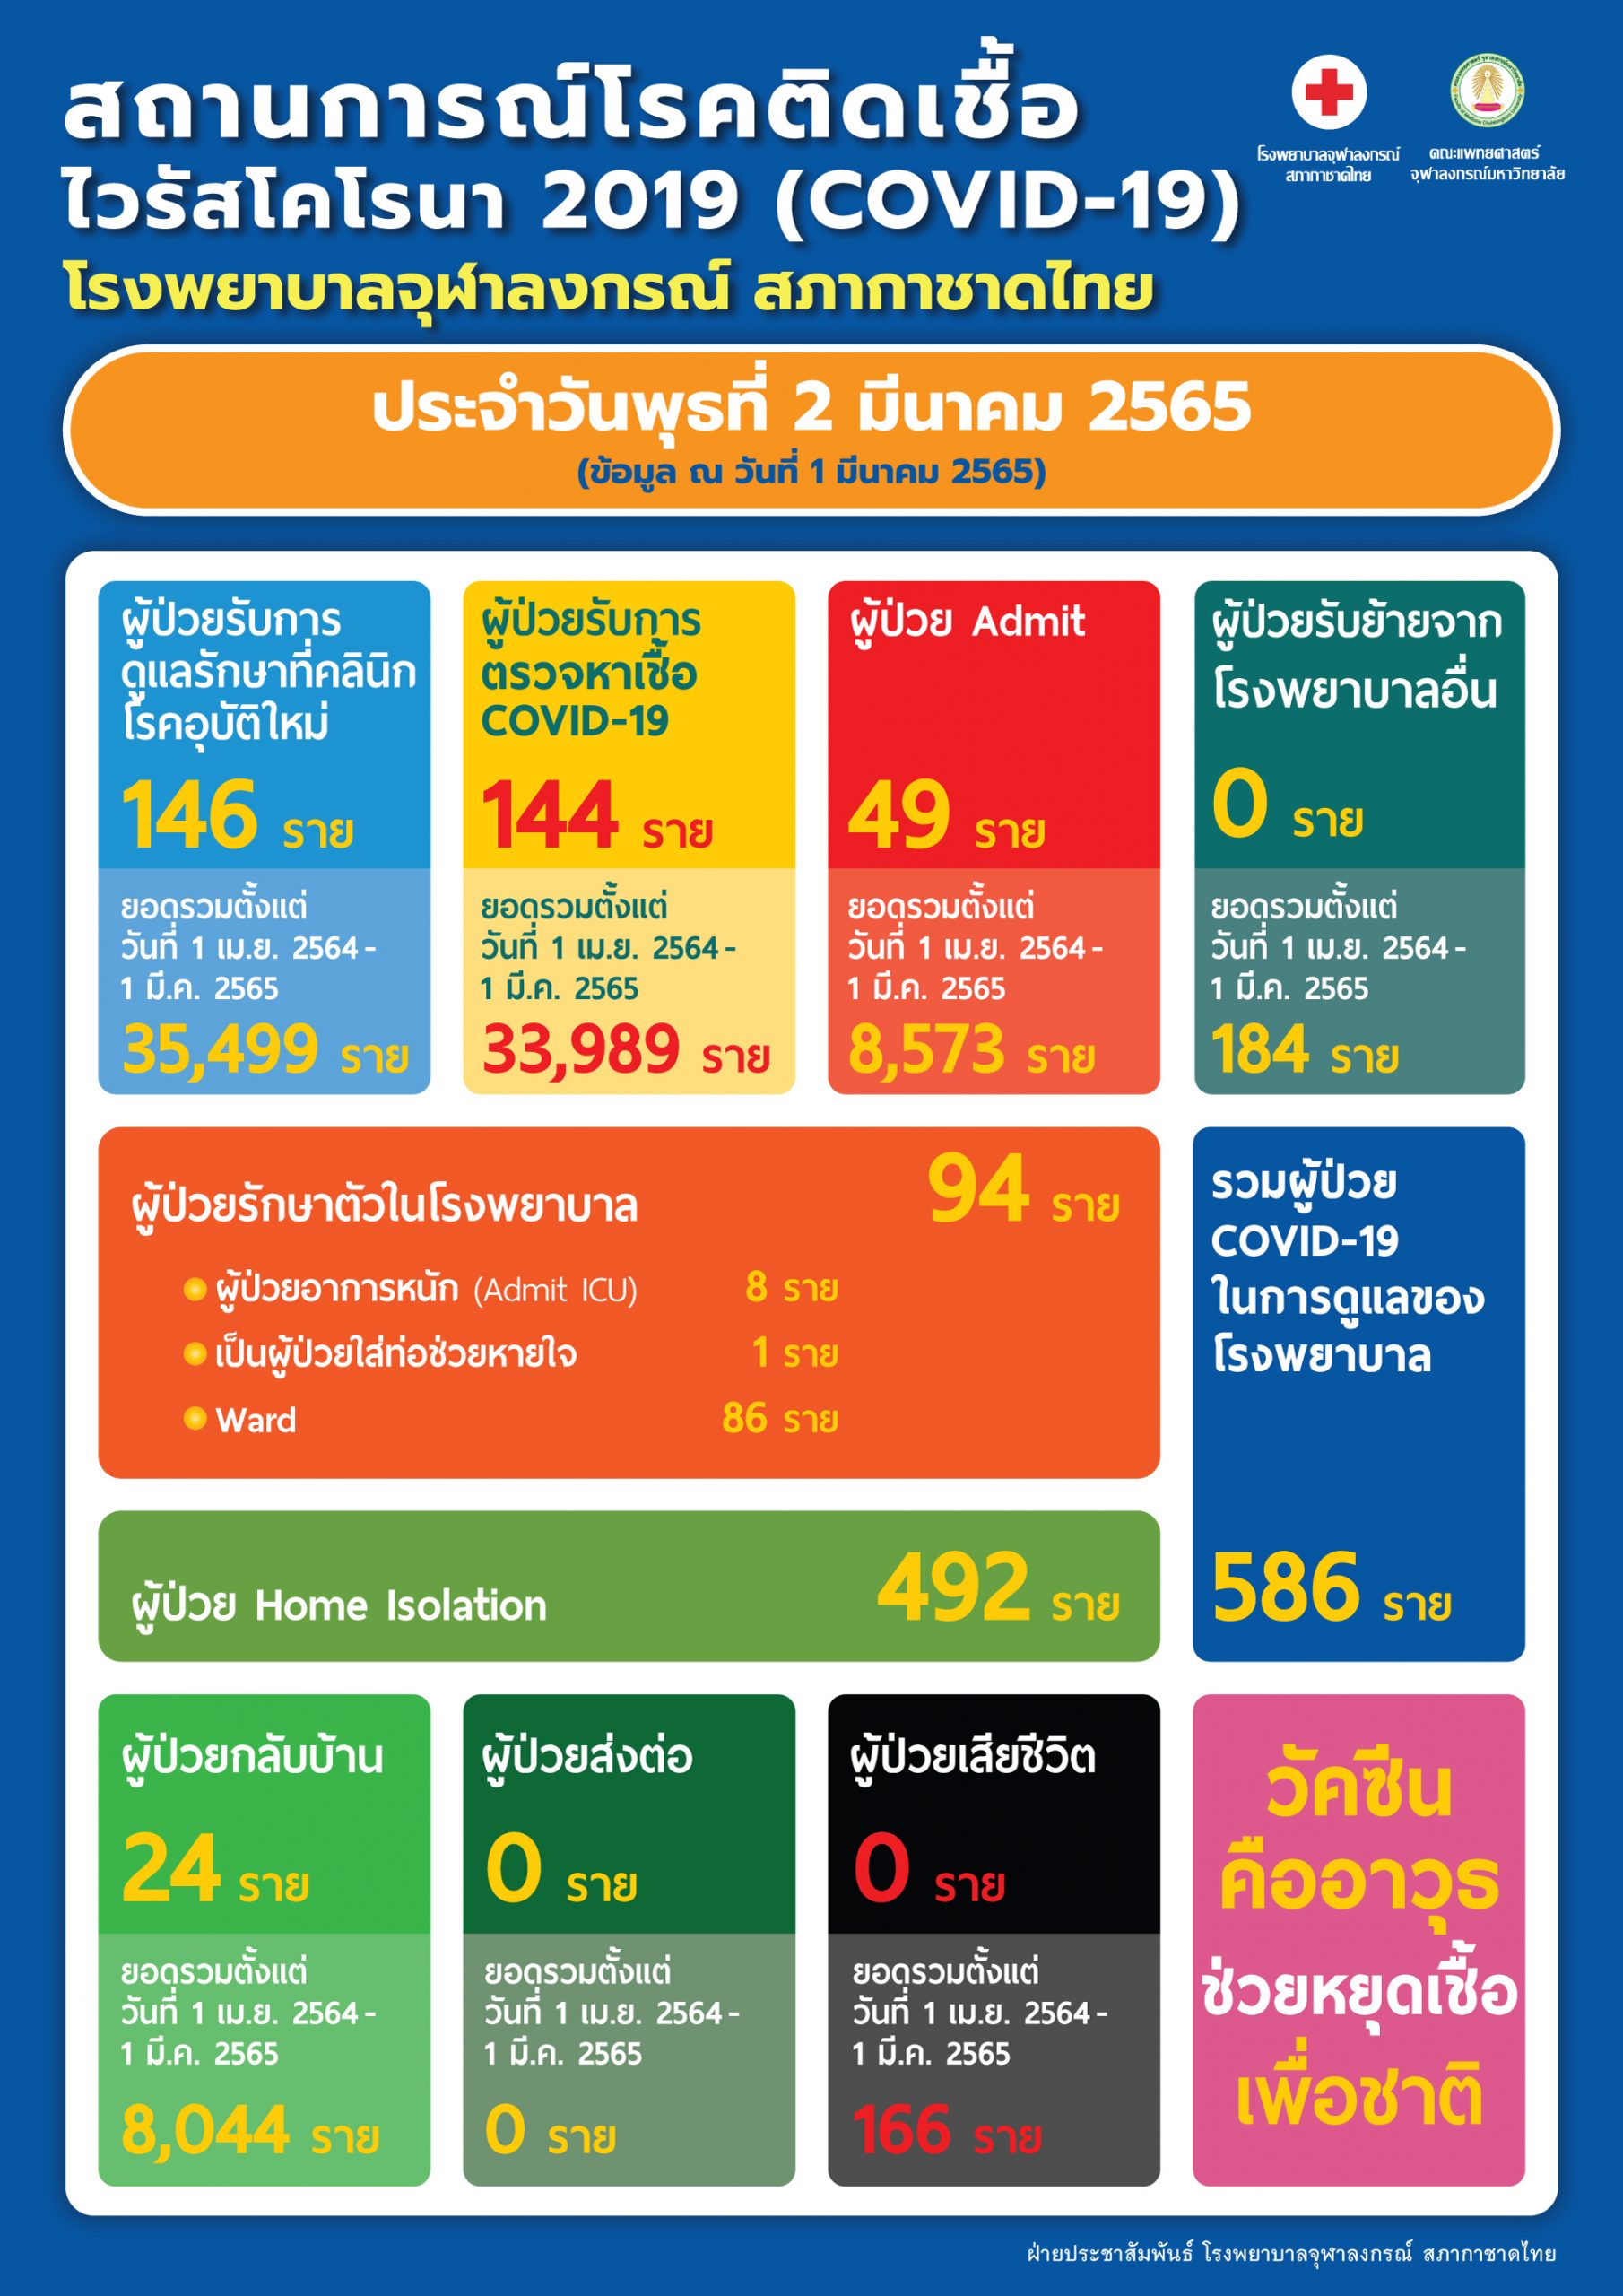 สถานการณ์โรคติดเชื้อไวรัสโคโรนา 2019 (COVID-19) โรงพยาบาลจุฬาลงกรณ์ สภากาชาดไทย ประจำวันพุธที่ 2 มีนาคม 2565